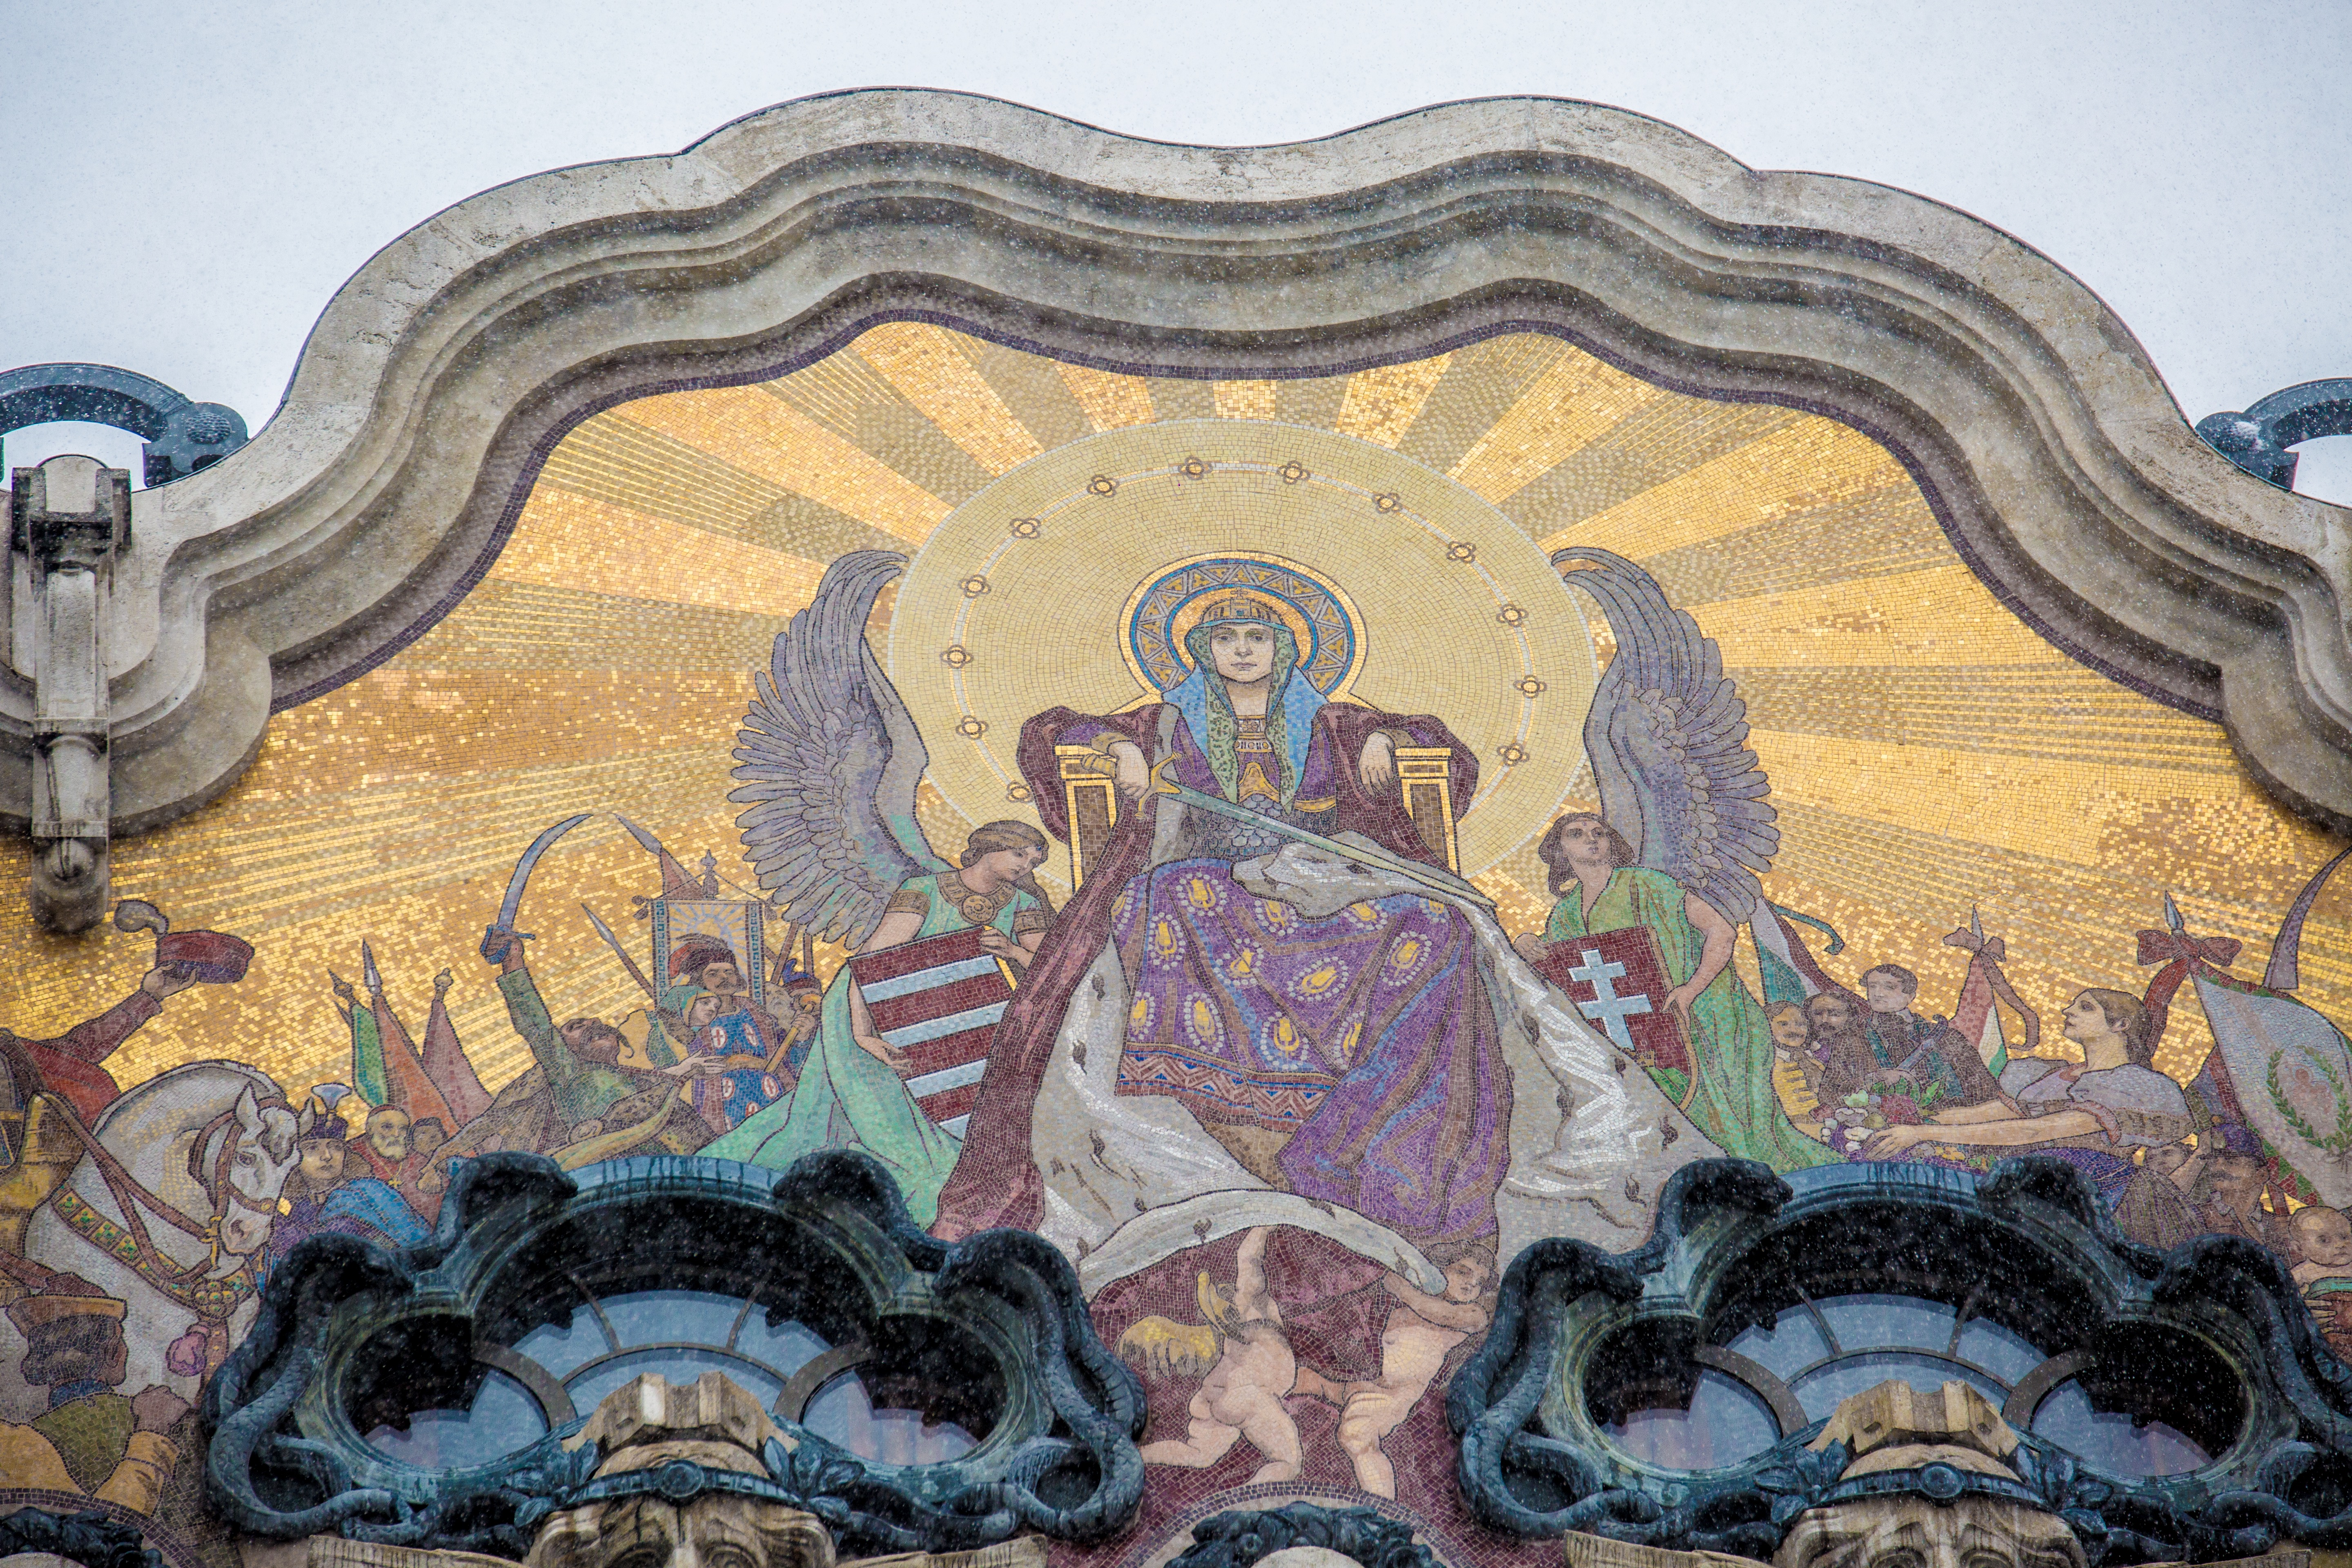 A legszebb budapesti mozaikok nyomában – Hungáriától a lovagokon át a sörkirályig